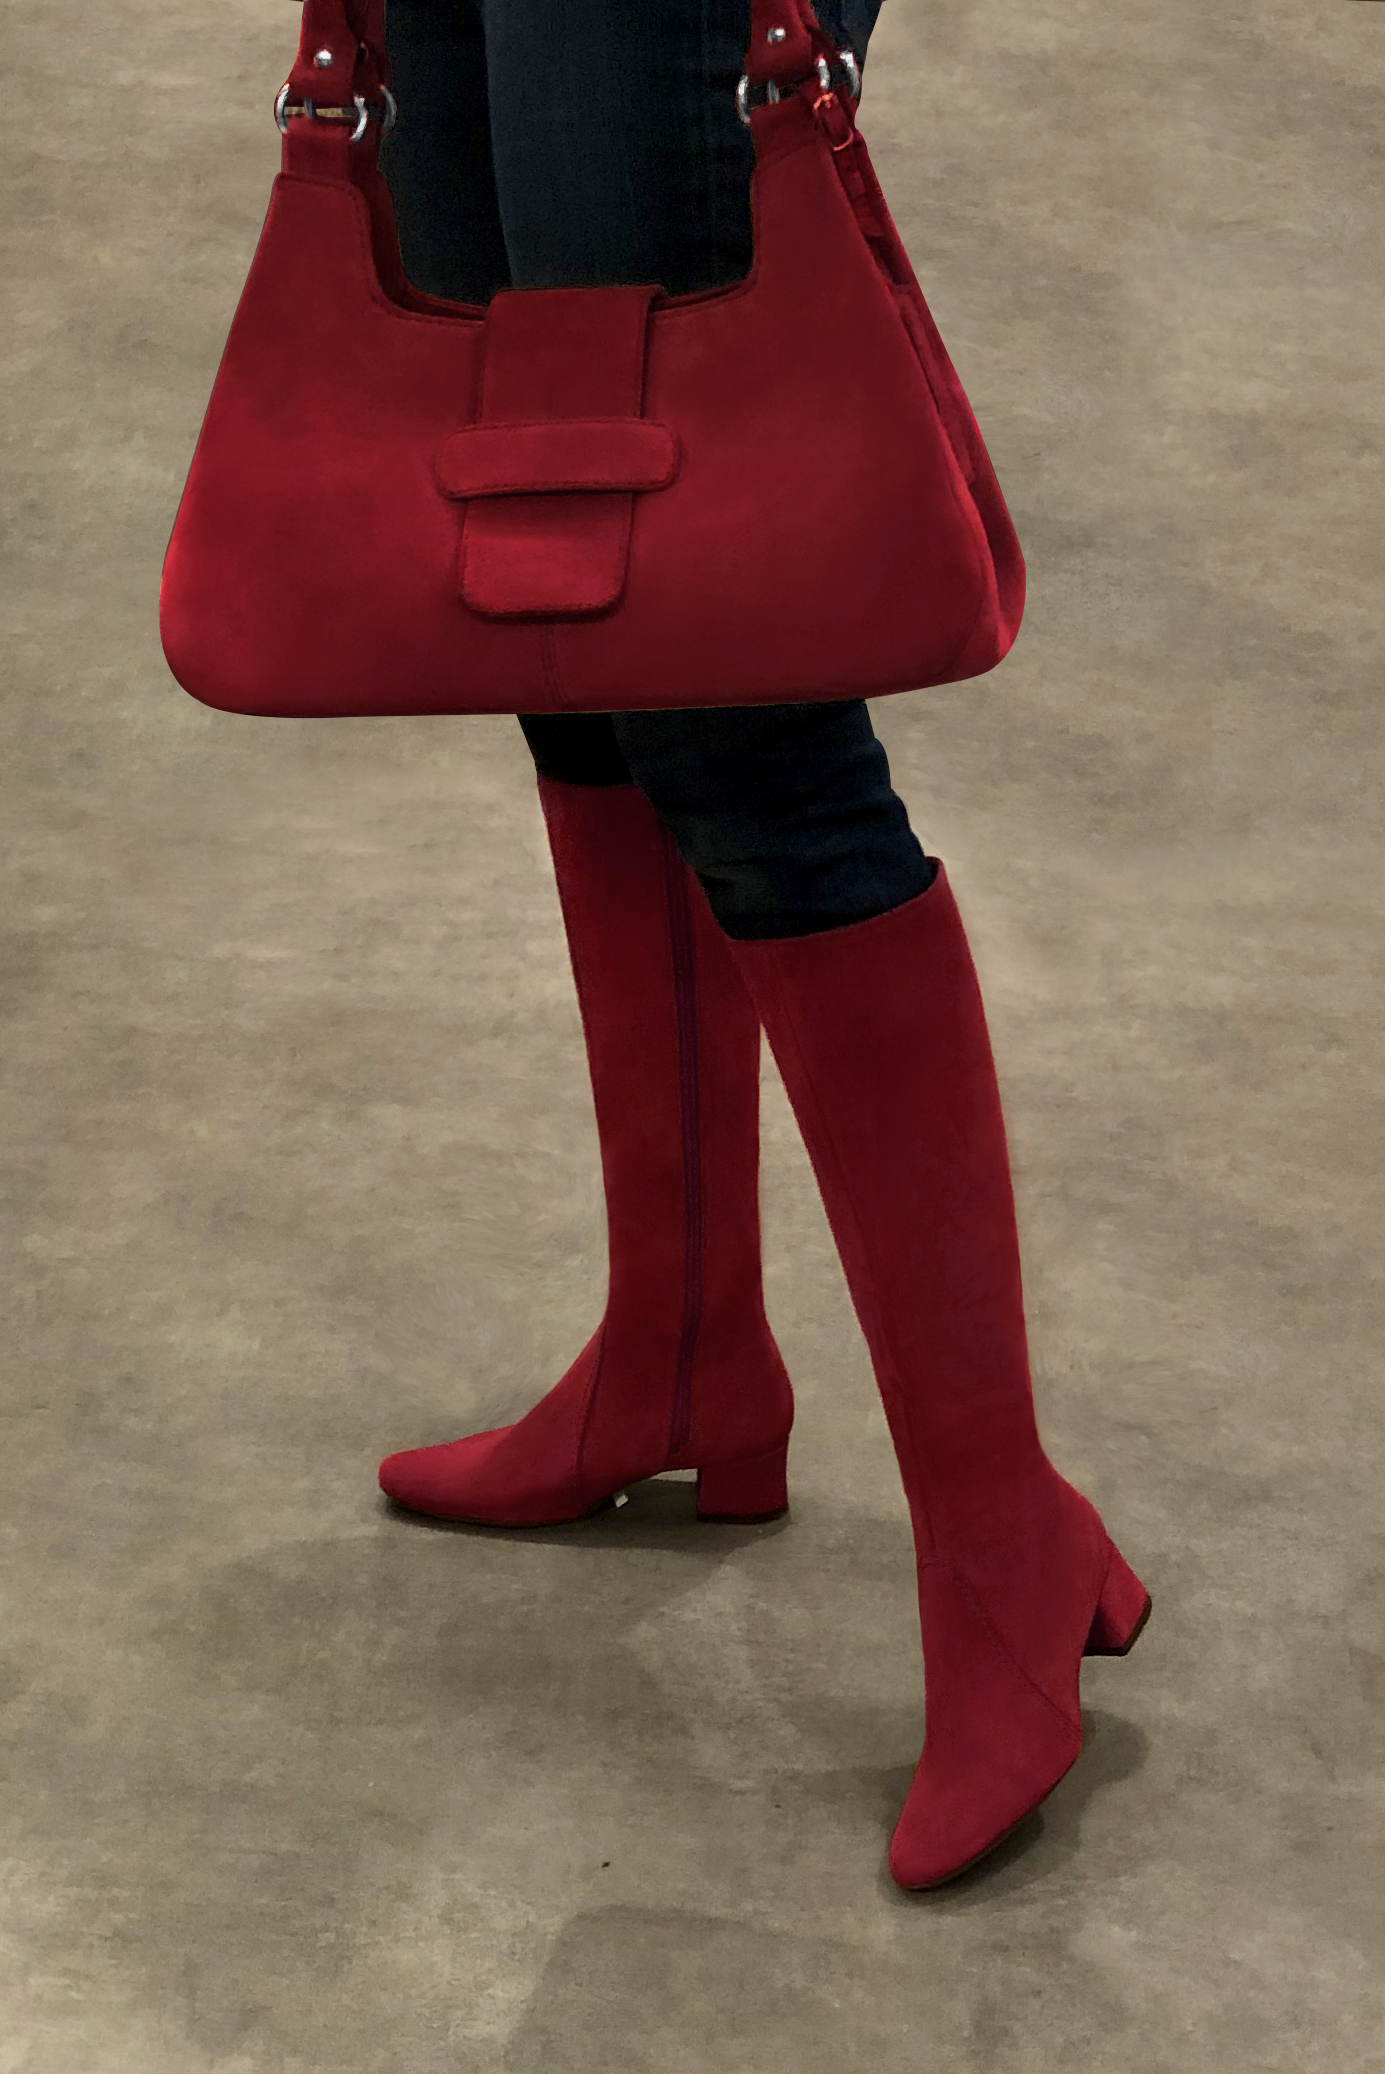 Burgundy red women's dress handbag, matching pumps and belts. Worn view - Florence KOOIJMAN